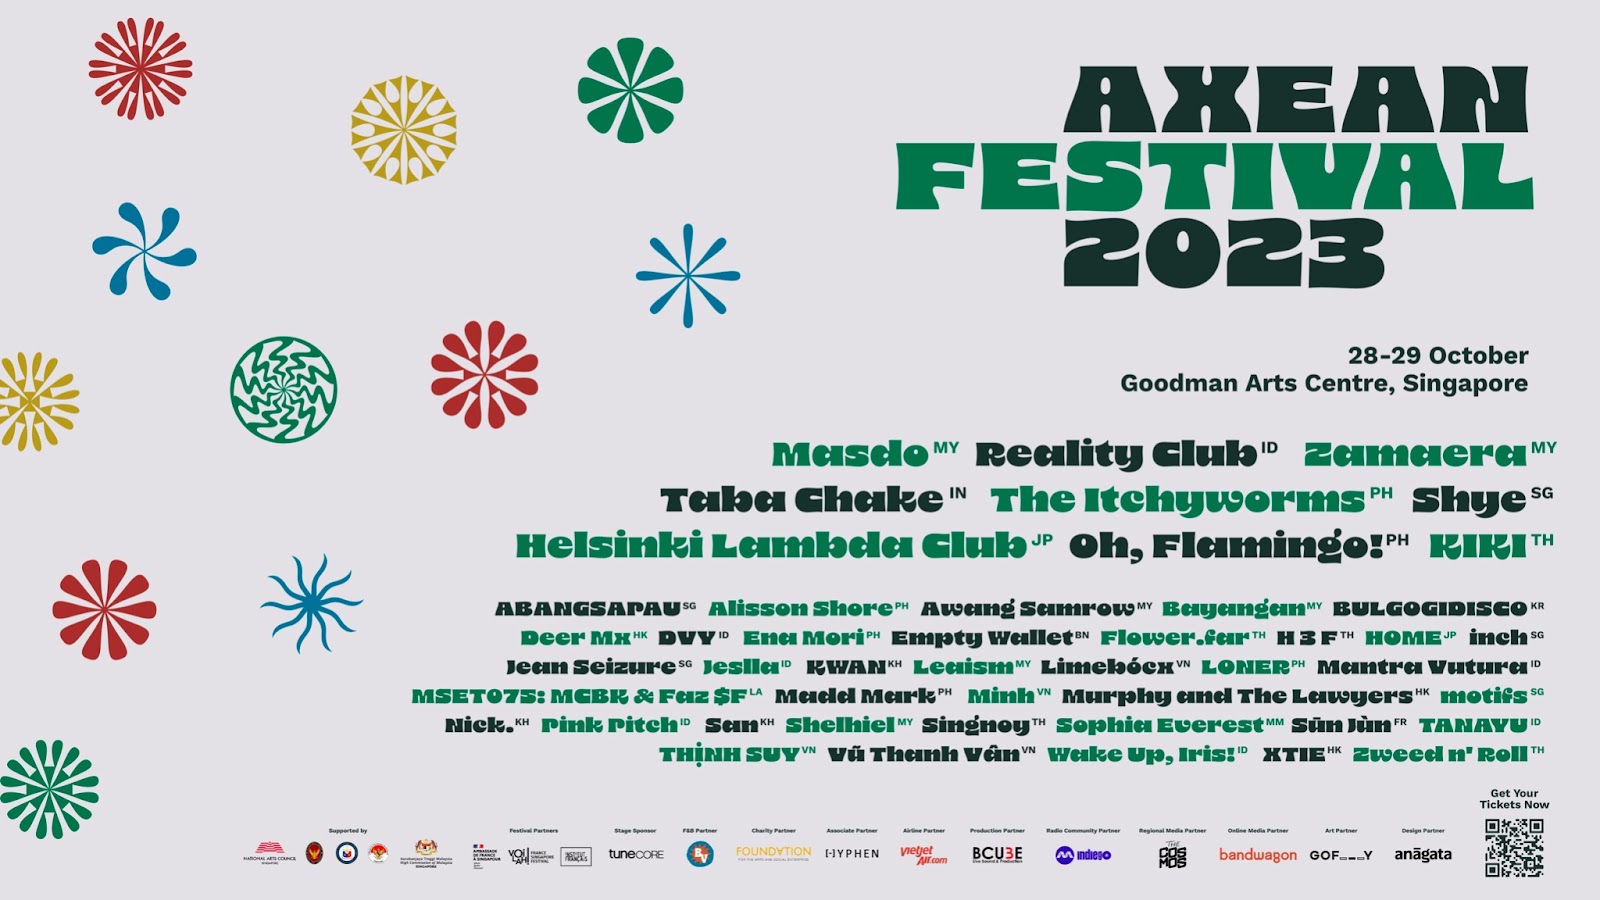 AXEAN Festival 2023 Singapore KIKI Zweed n' Roll